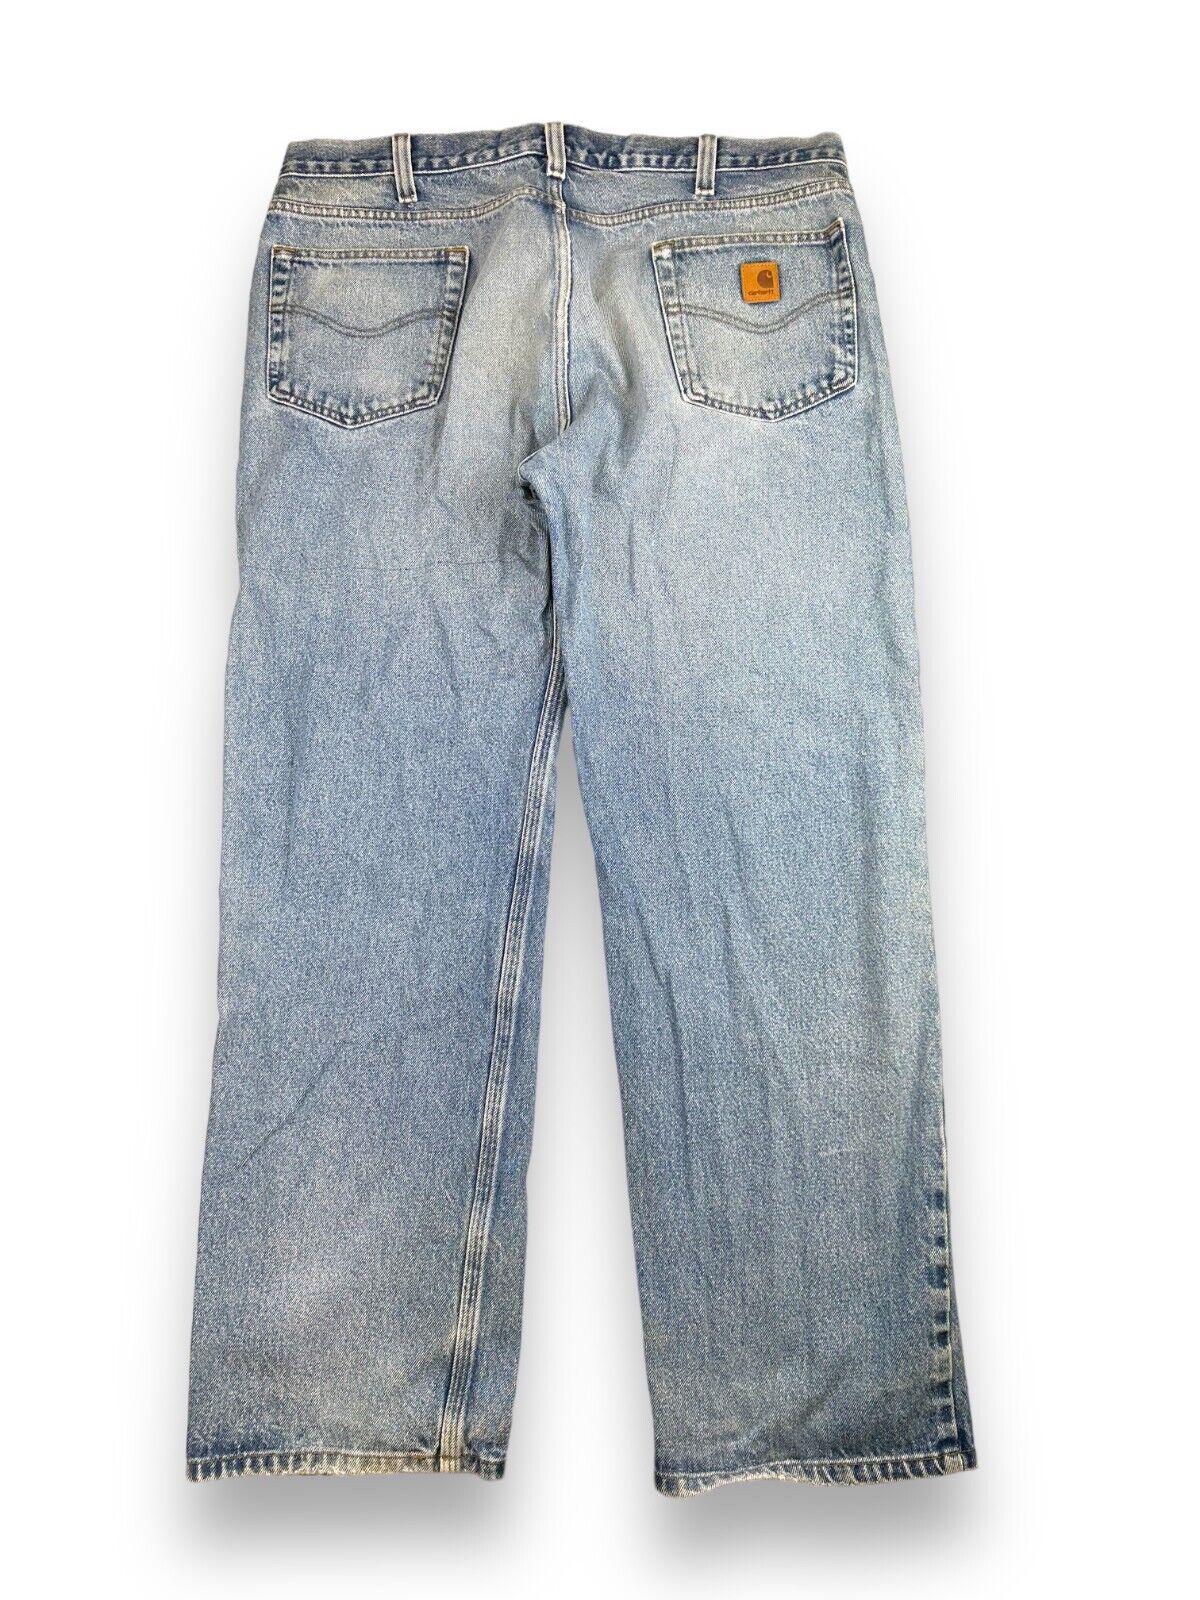 Vintage Carhartt Traditional Fit Work Wear Light Wear Denim Pants Size 39W B480